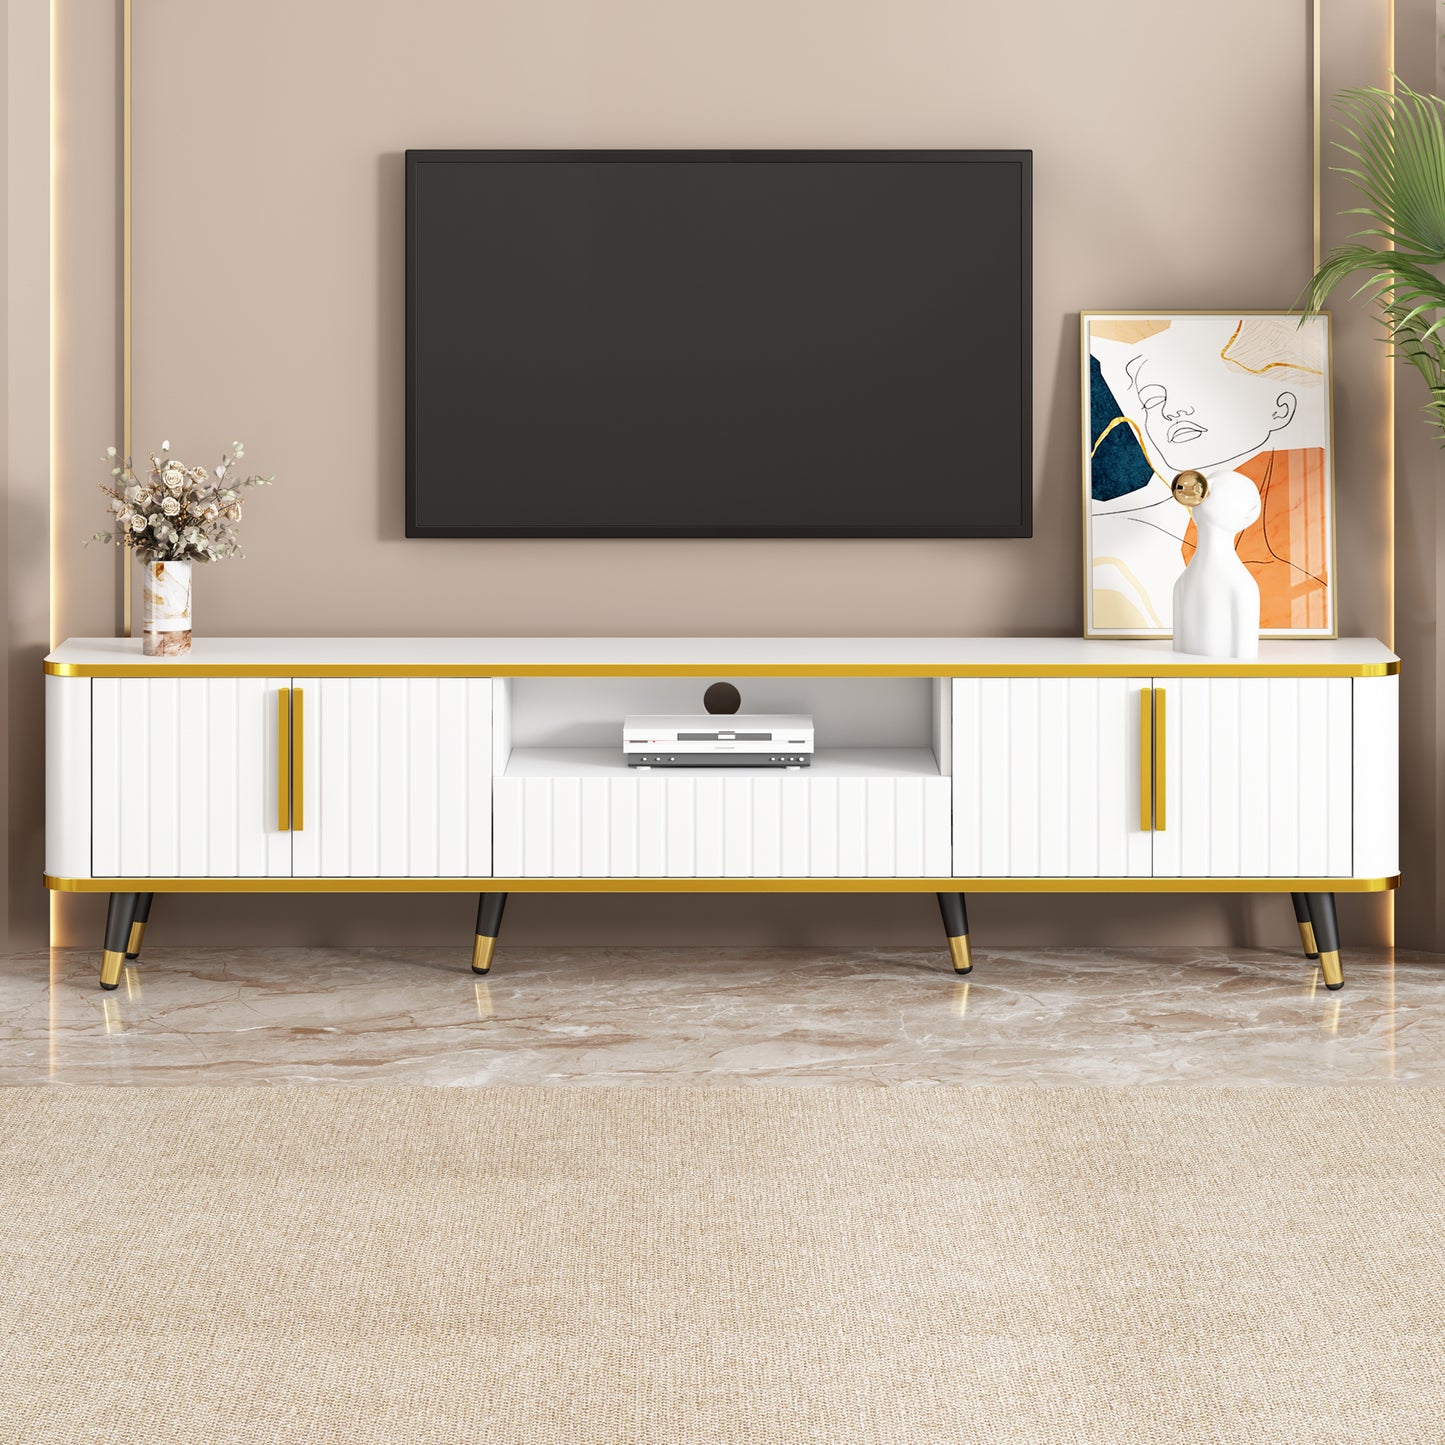 ON-TREND Meuble TV minimaliste de luxe avec étagère de rangement ouverte pour téléviseurs jusqu'à 85", centre de divertissement avec armoires et tiroirs, console multimédia pratique avec pieds uniques pour le salon, blanc